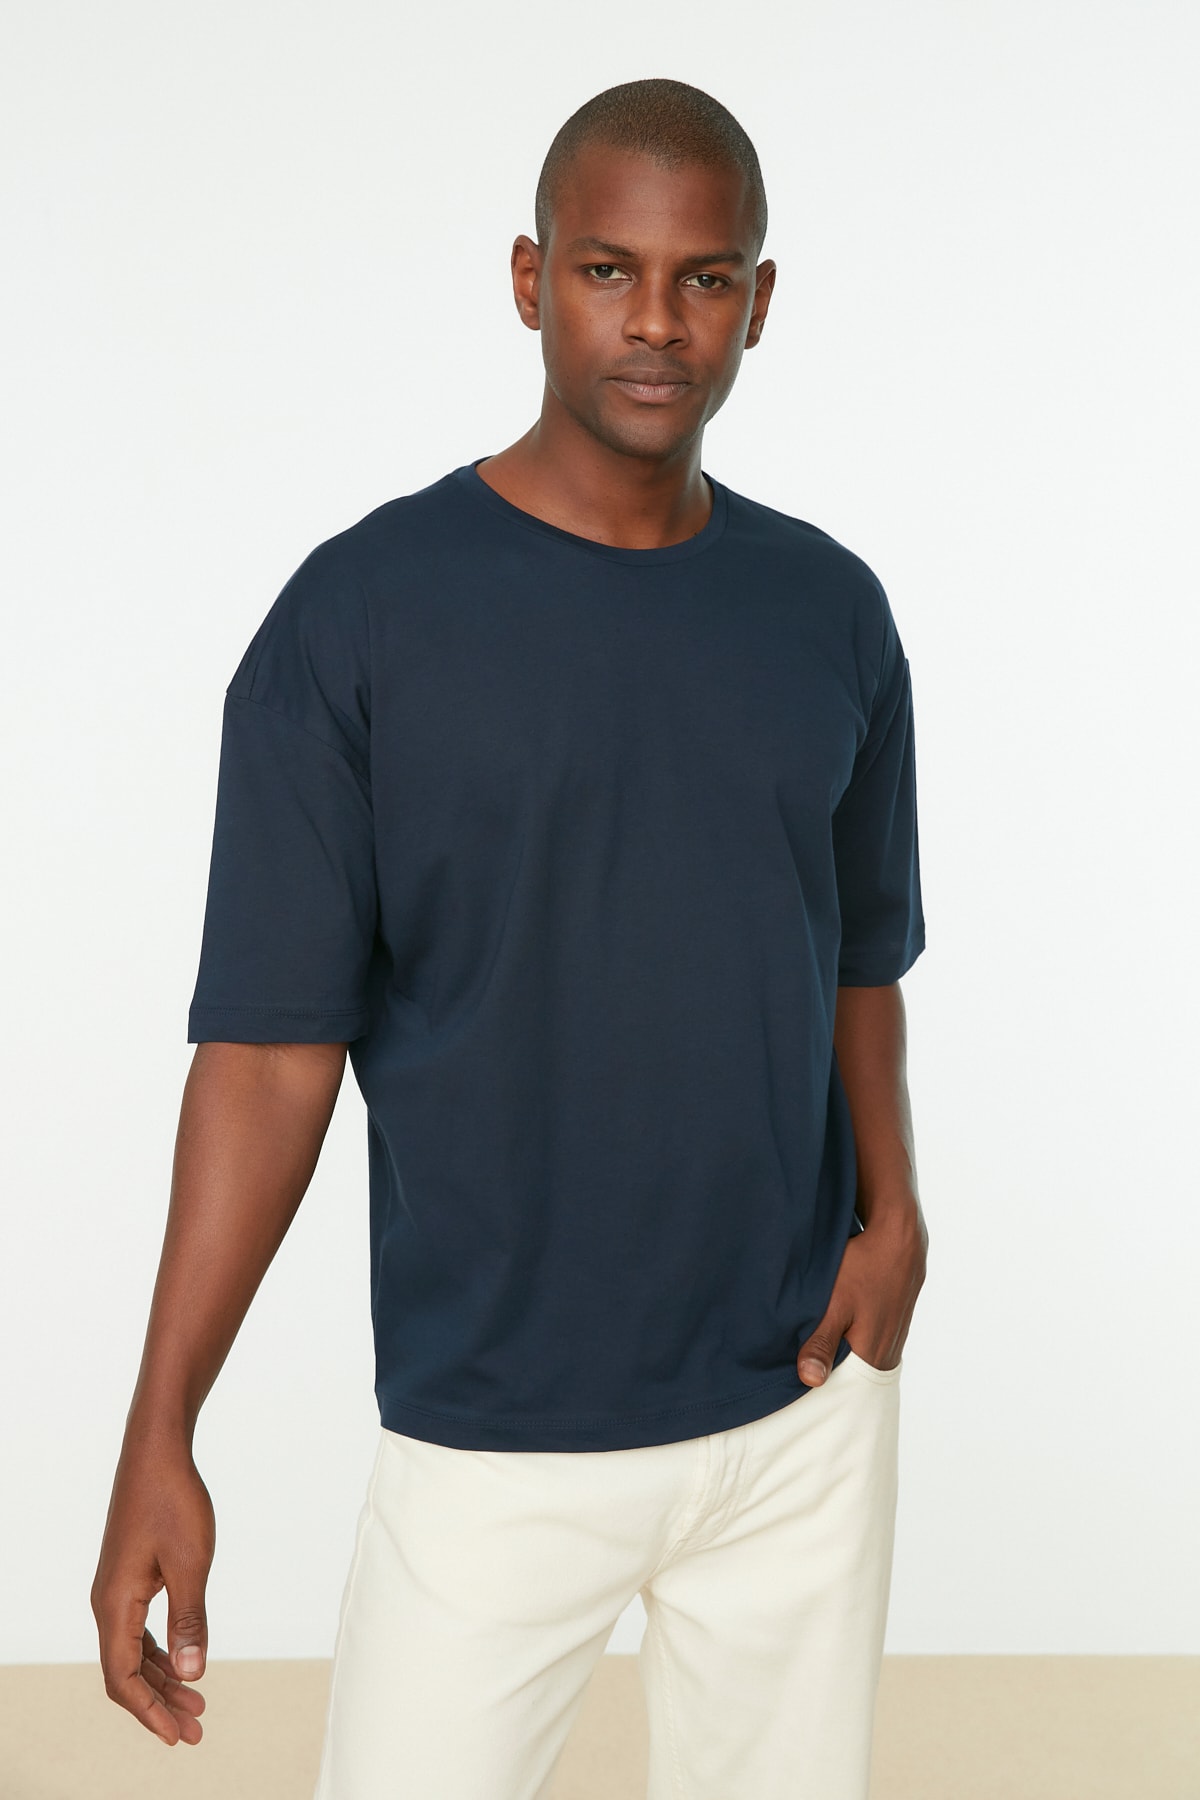 Trendyol Navy Blue pánsky uvoľnený/pohodlný strih tričko zo 100% bavlny s textovou potlačou